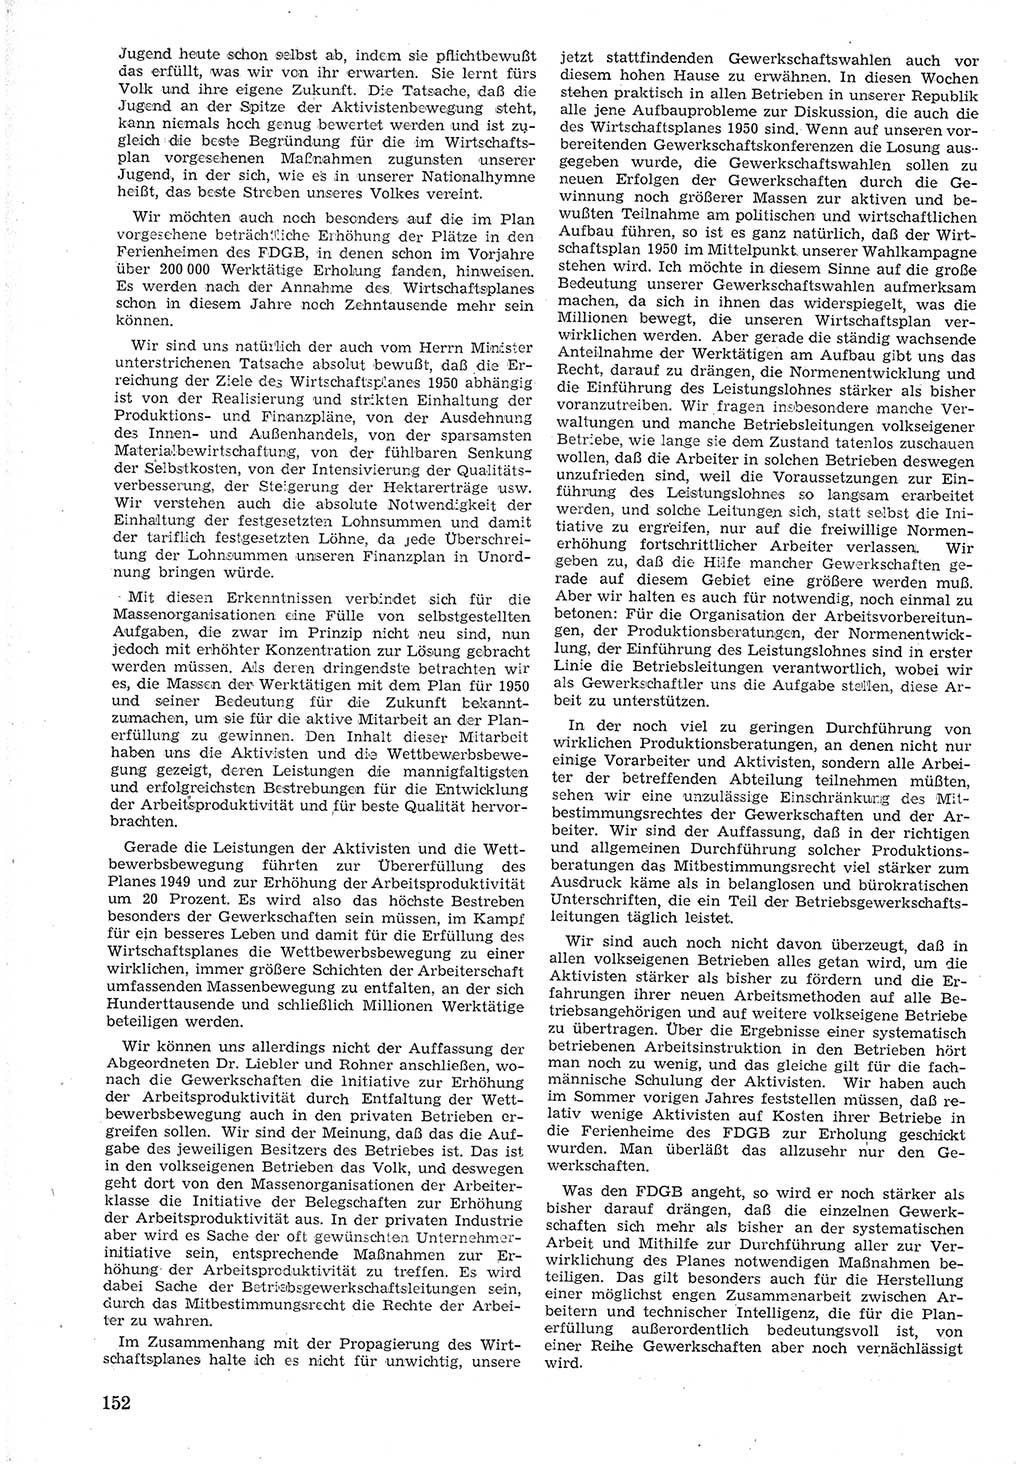 Provisorische Volkskammer (VK) der Deutschen Demokratischen Republik (DDR) 1949-1950, Dokument 164 (Prov. VK DDR 1949-1950, Dok. 164)